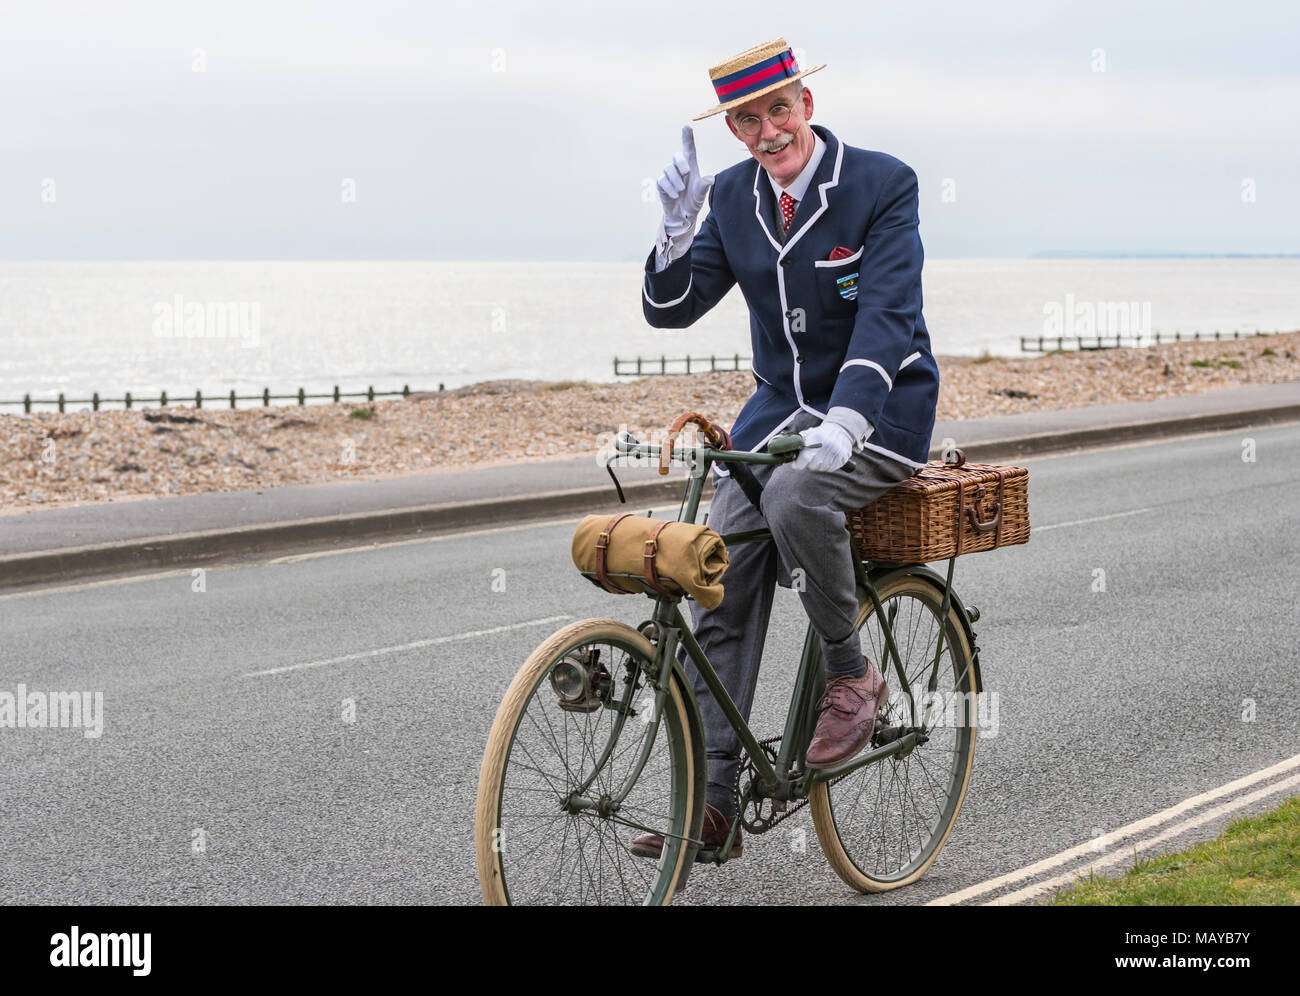 Uomo anziano in bicicletta su una bicicletta vittoriano vestito in costume che indossa un blazer e paglia navigante hat, NEL REGNO UNITO. Gentleman tipping hat. Foto Stock